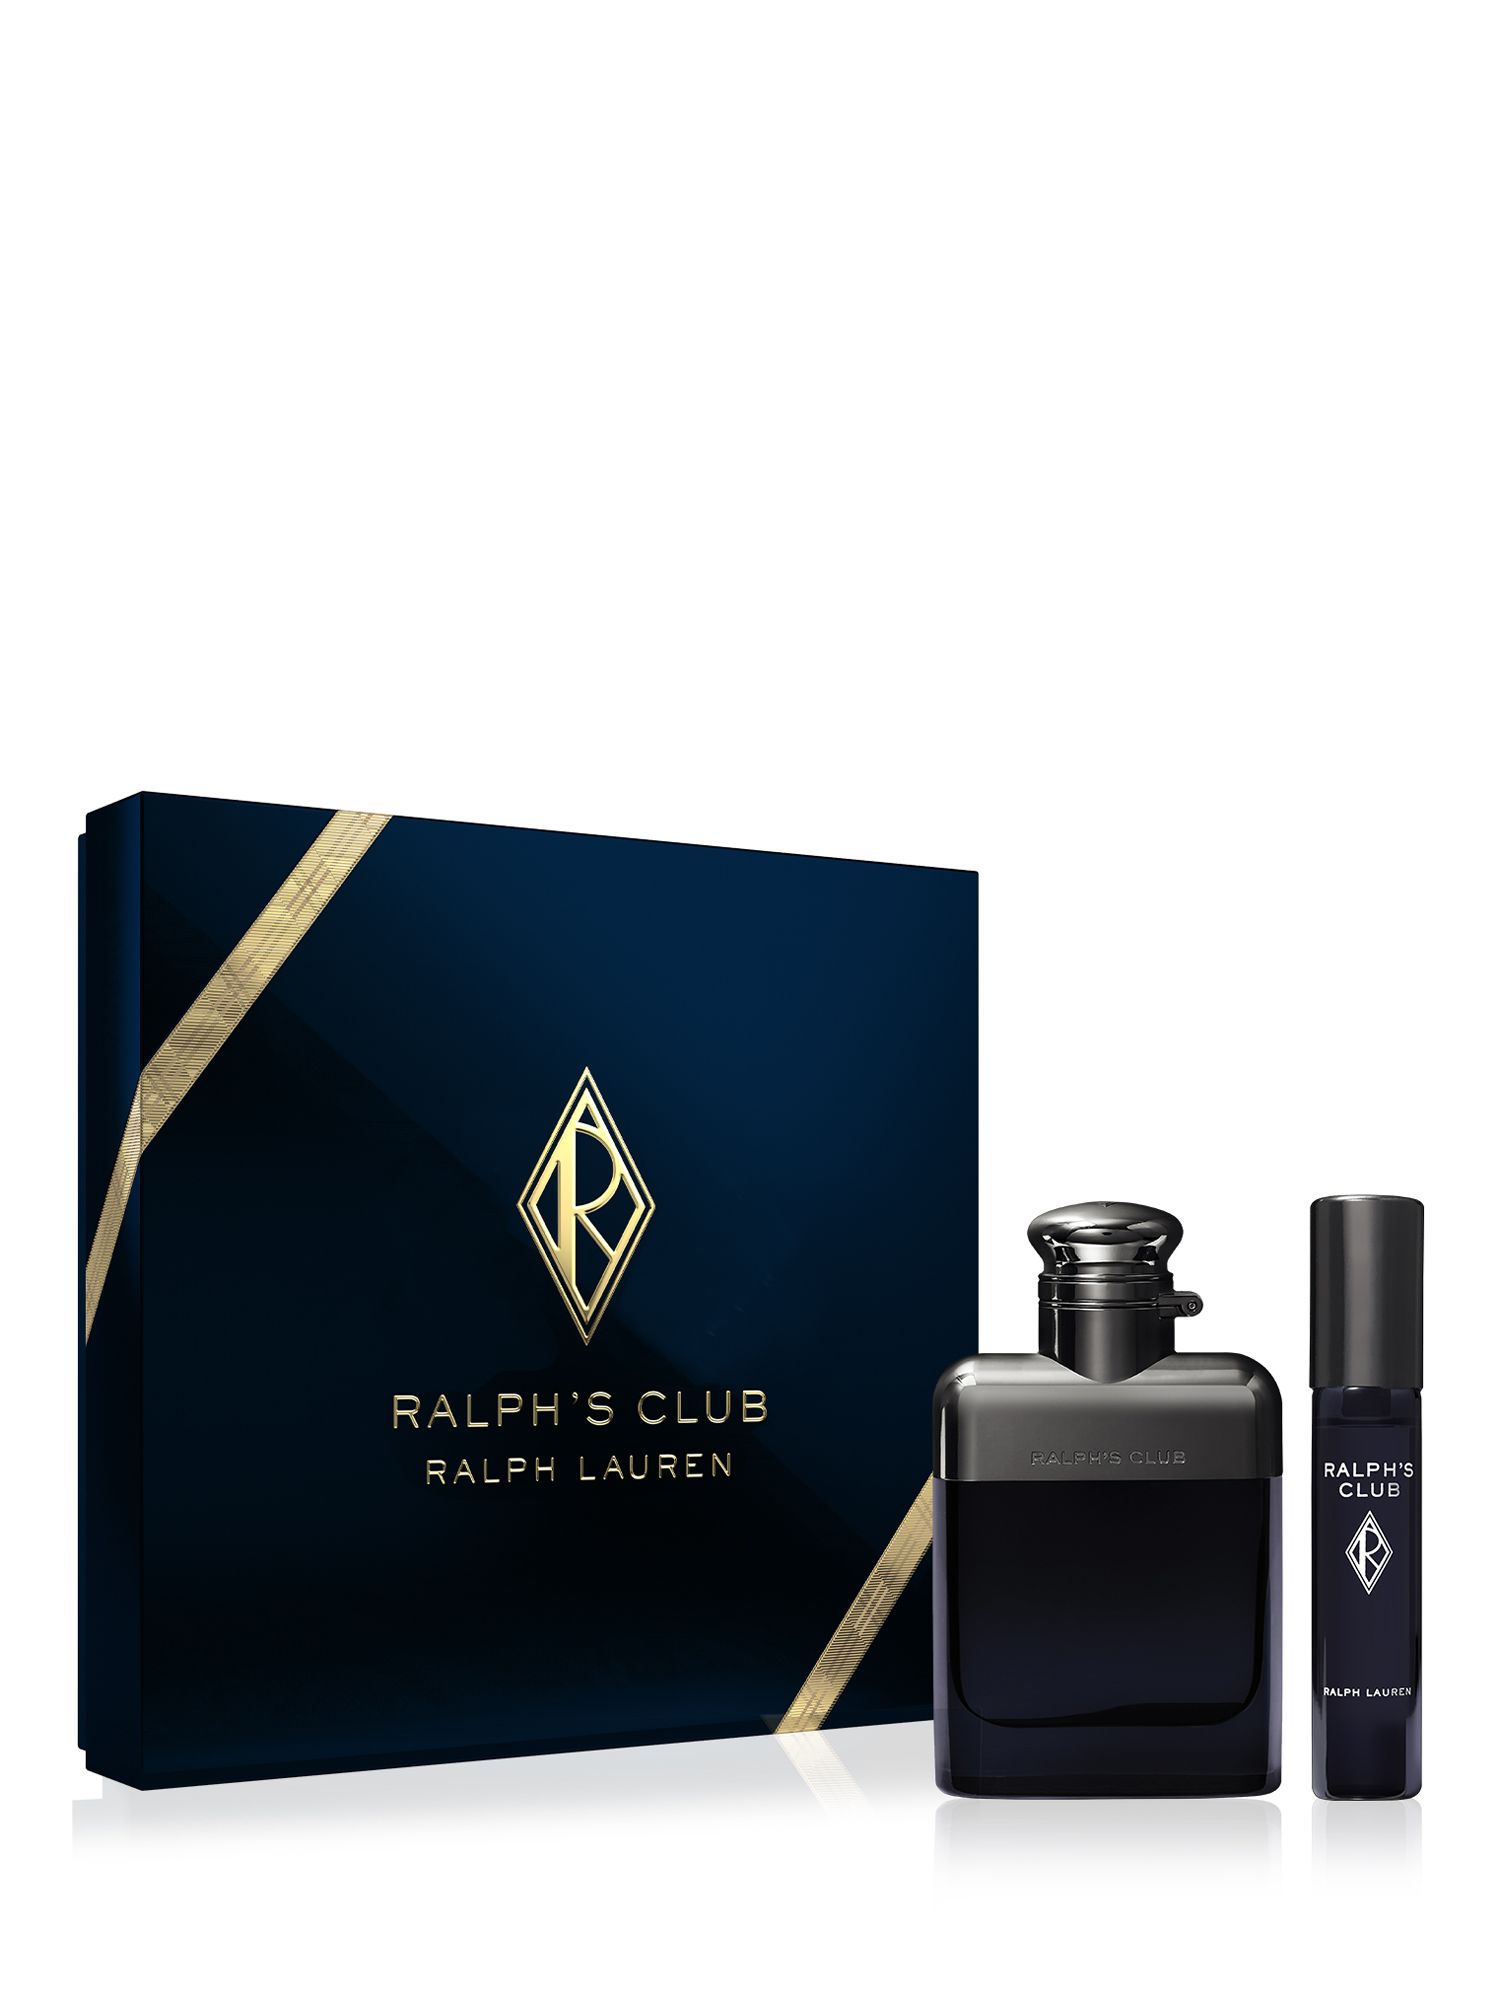 Ralph Lauren Ralph’s Club Holiday Eau de Parfum Gift Set